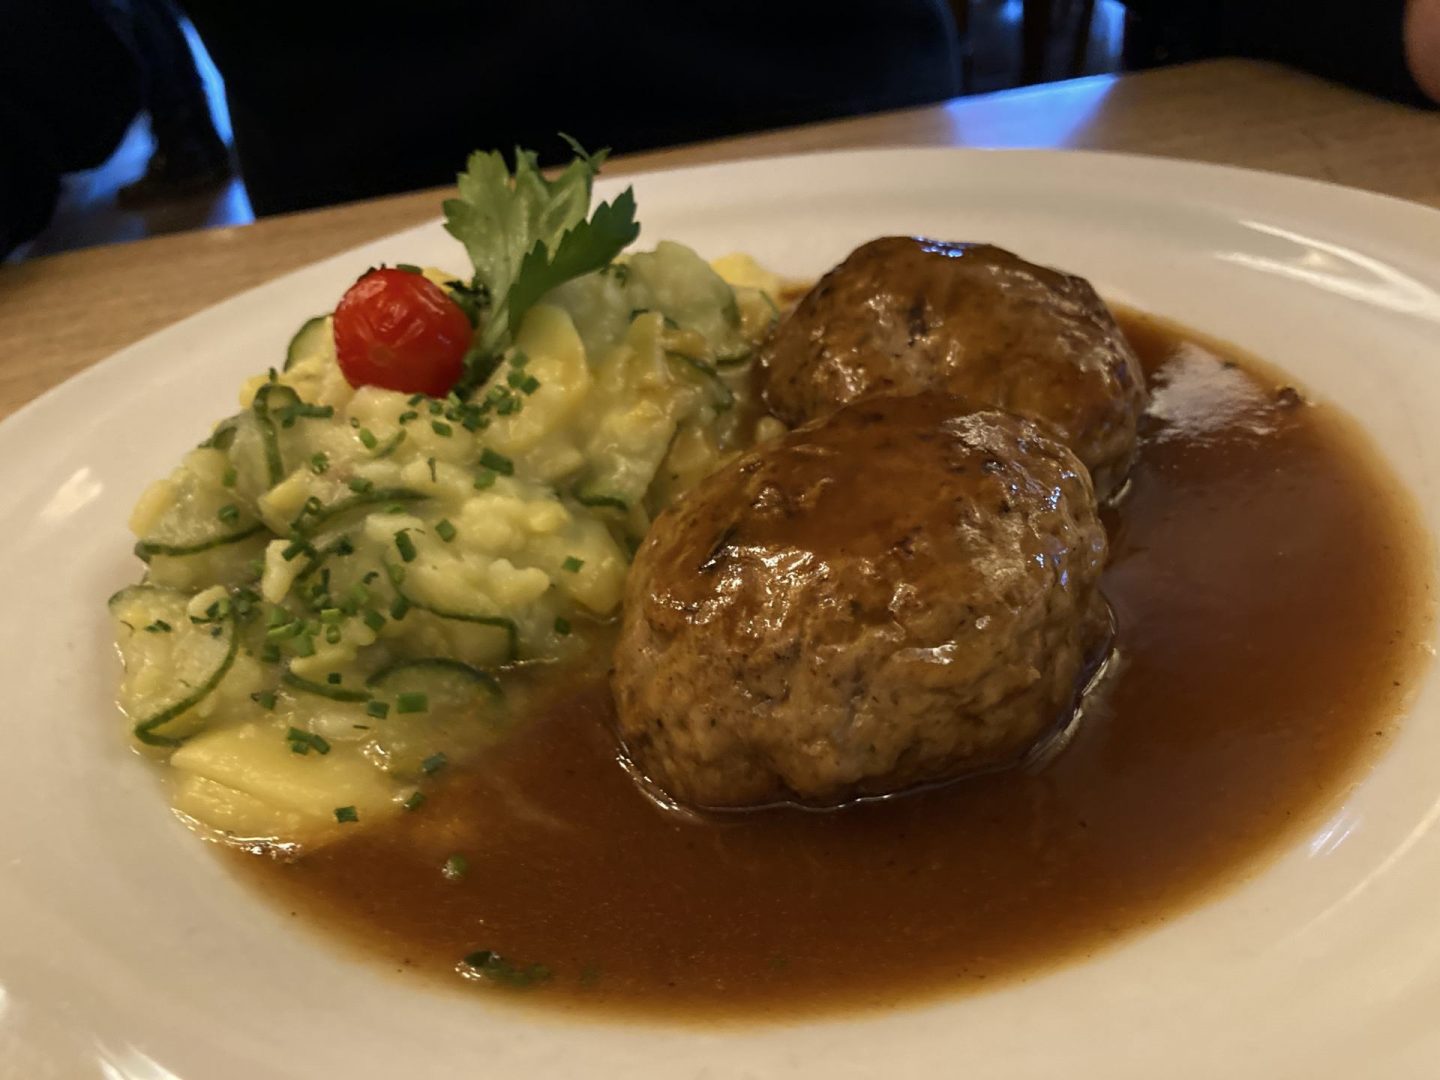 Erfahrung Bewertung Kritik Gasthaus zur Schranne Garmisch-Partenkirchen Kalbfleischpflanzerl mit Kartoffel-Gurken-Salat Foodblog Sternestulle